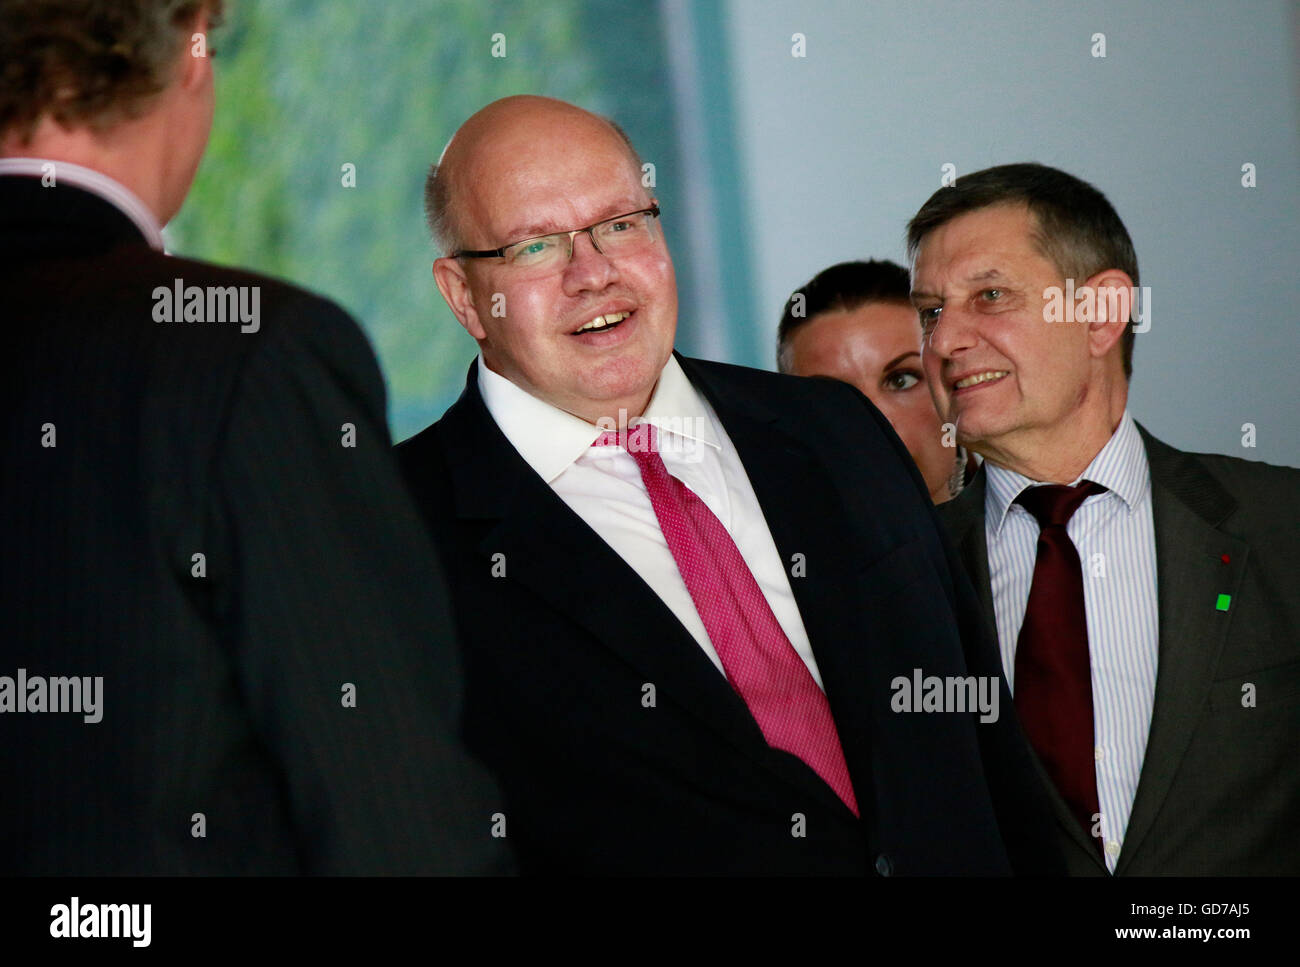 Peter Altmaier - Treffen der dt. Bundeskanzlerin mit dem italienischen Ministerpraesidenten und dem franzoesischen Praesidenten Stock Photo